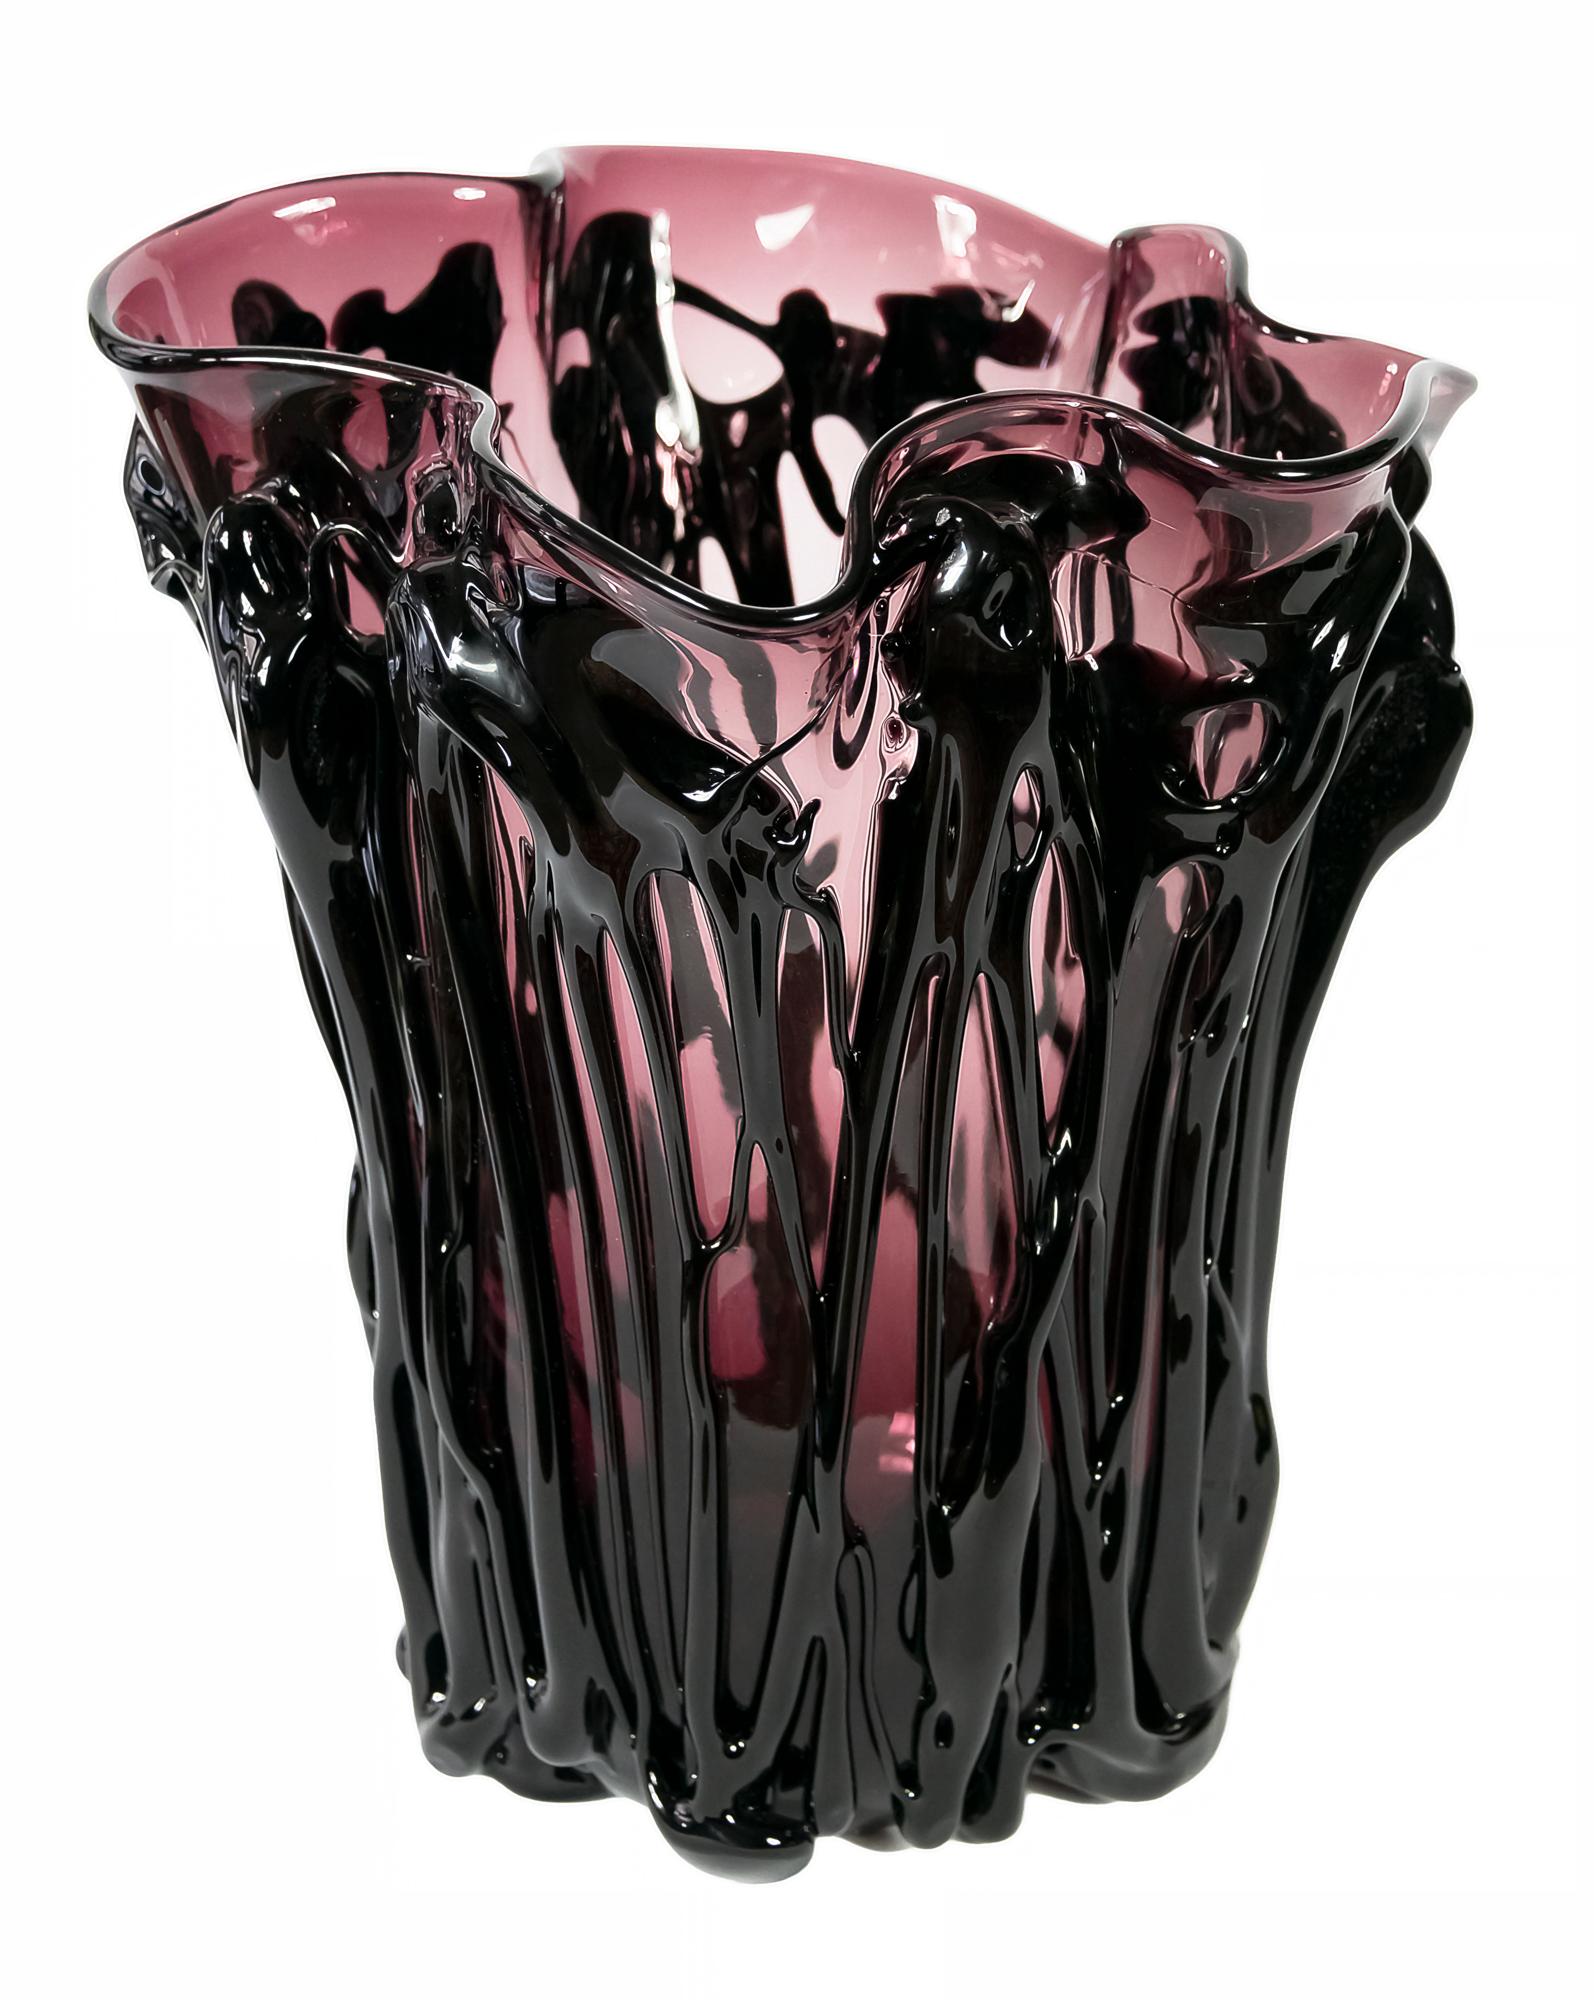 Ce grand vase en verre italien de Murano est fabriqué à la main par E. Camozzo. Il est de forme asymétrique et se décline en deux couleurs - violet et noir.
Le vase est très lourd et solide.
Le poids est de 10,8 kg.
Signé sur le socle E.